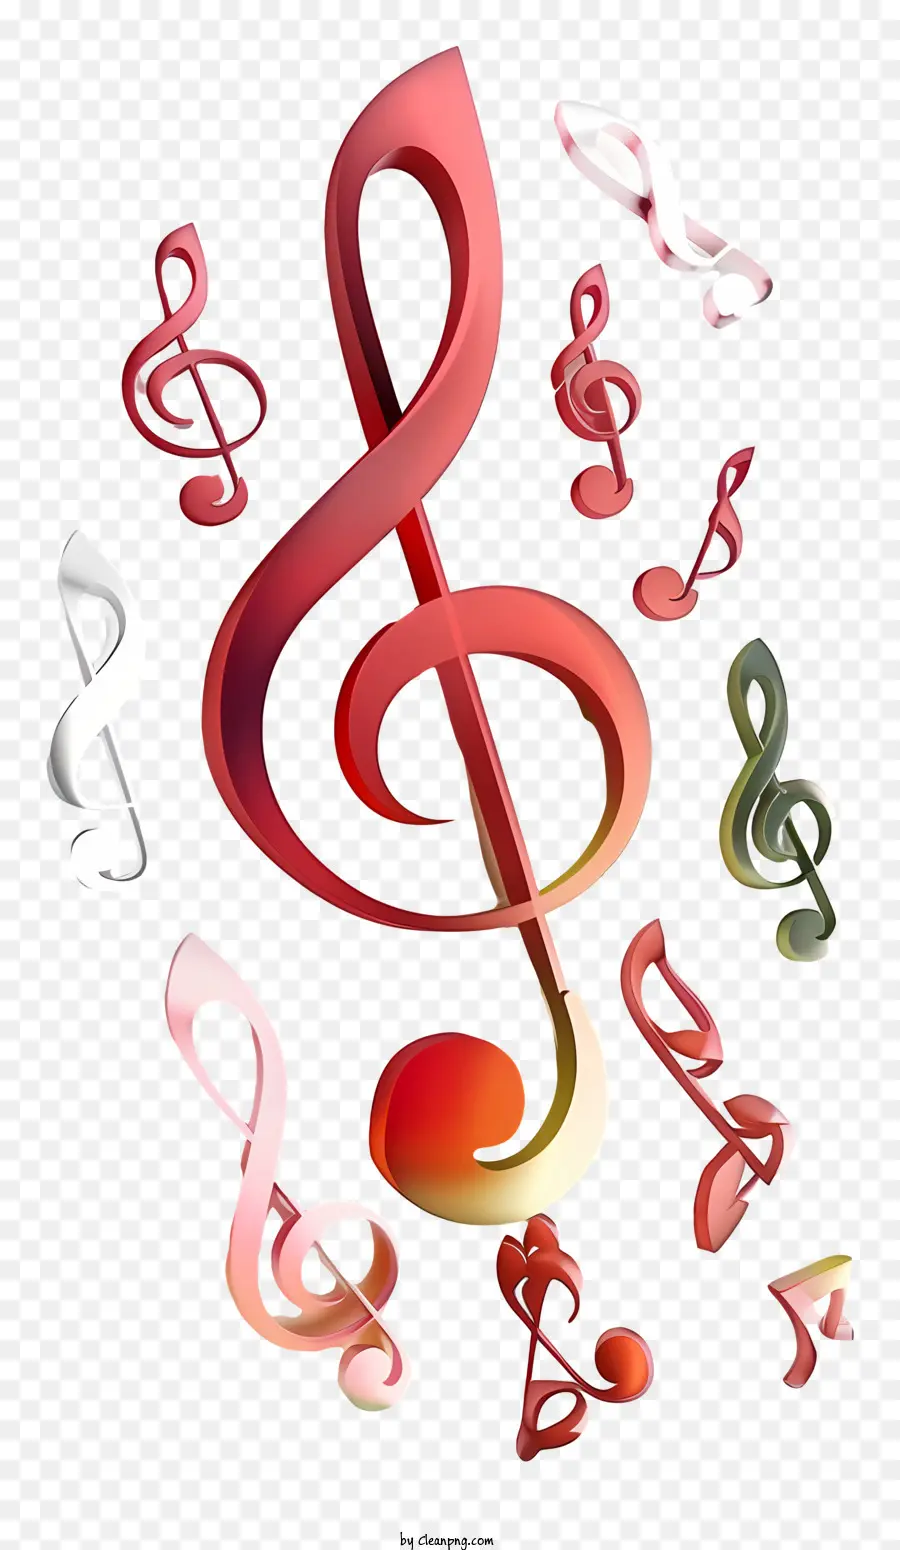 Musik Noten - Bunte musikalische Noten rund um das Treble -Clef -Symbol